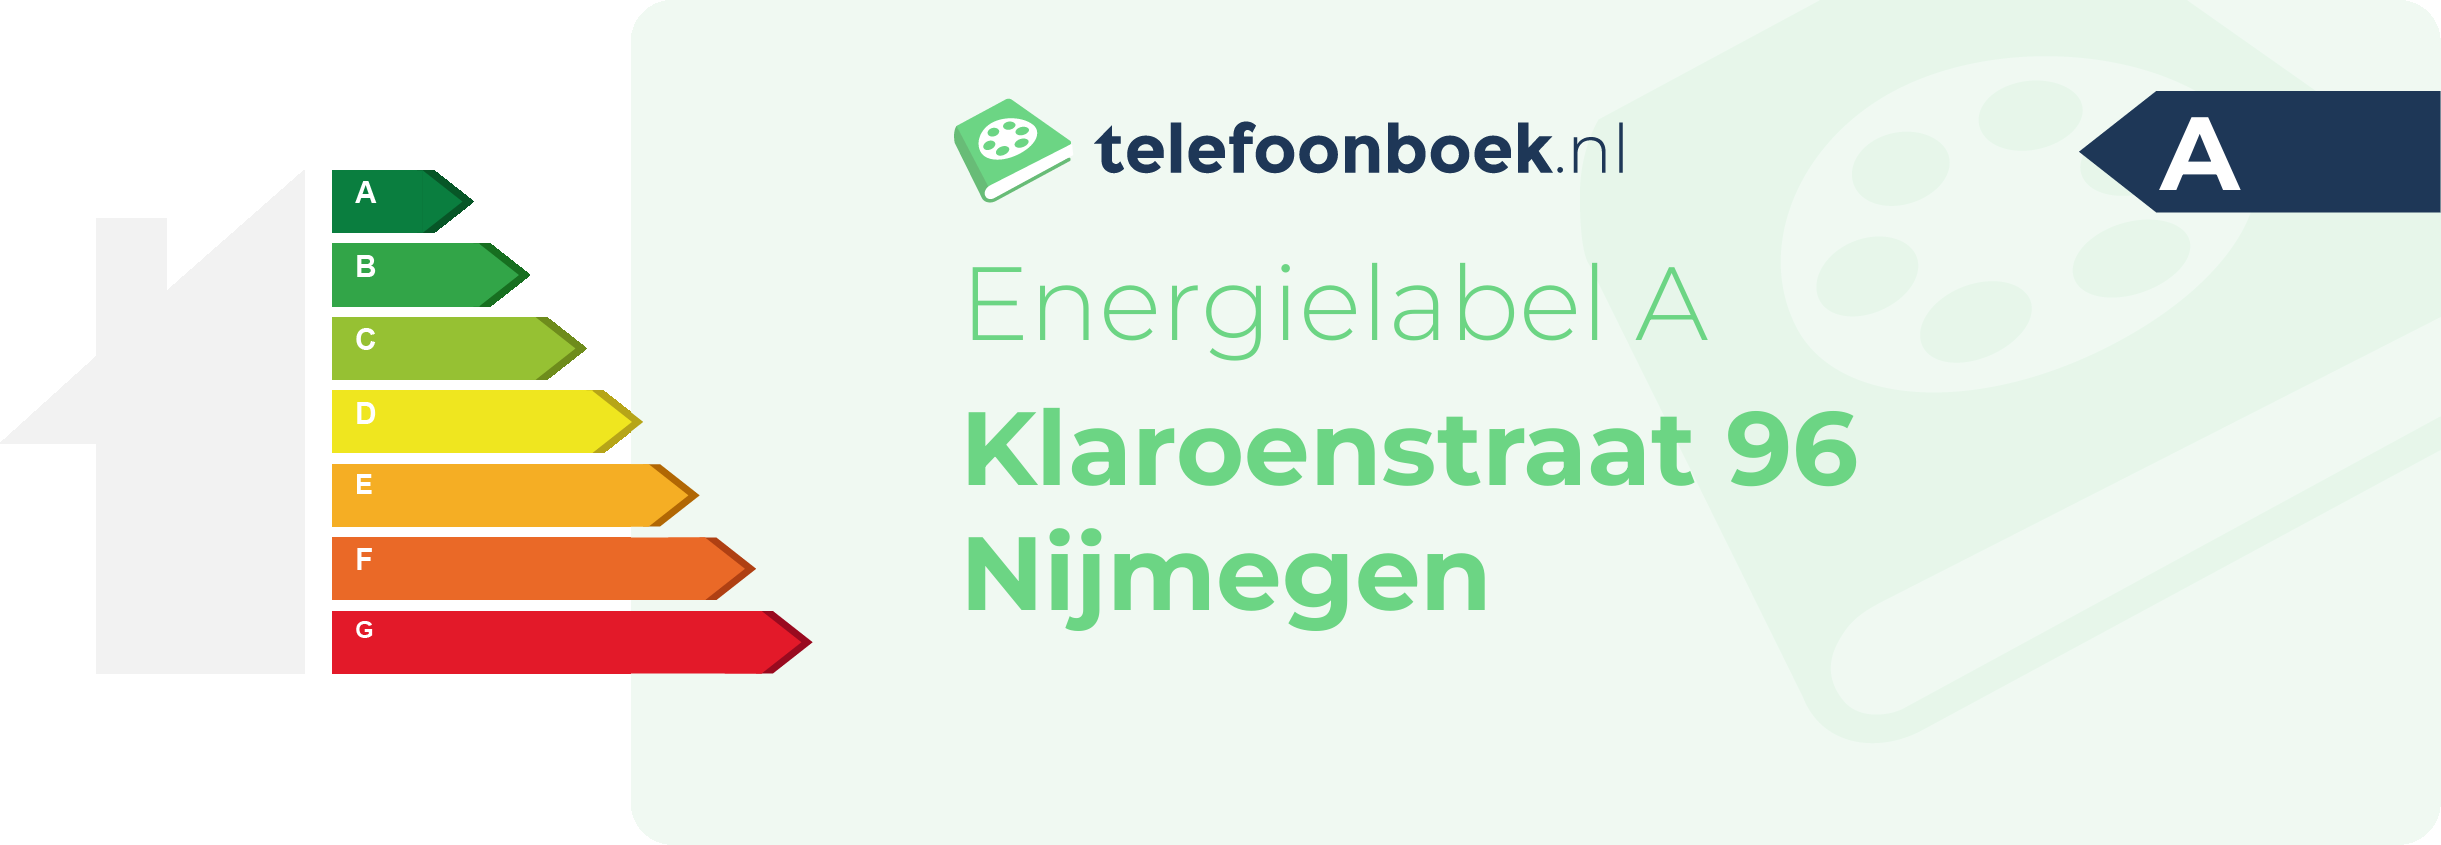 Energielabel Klaroenstraat 96 Nijmegen